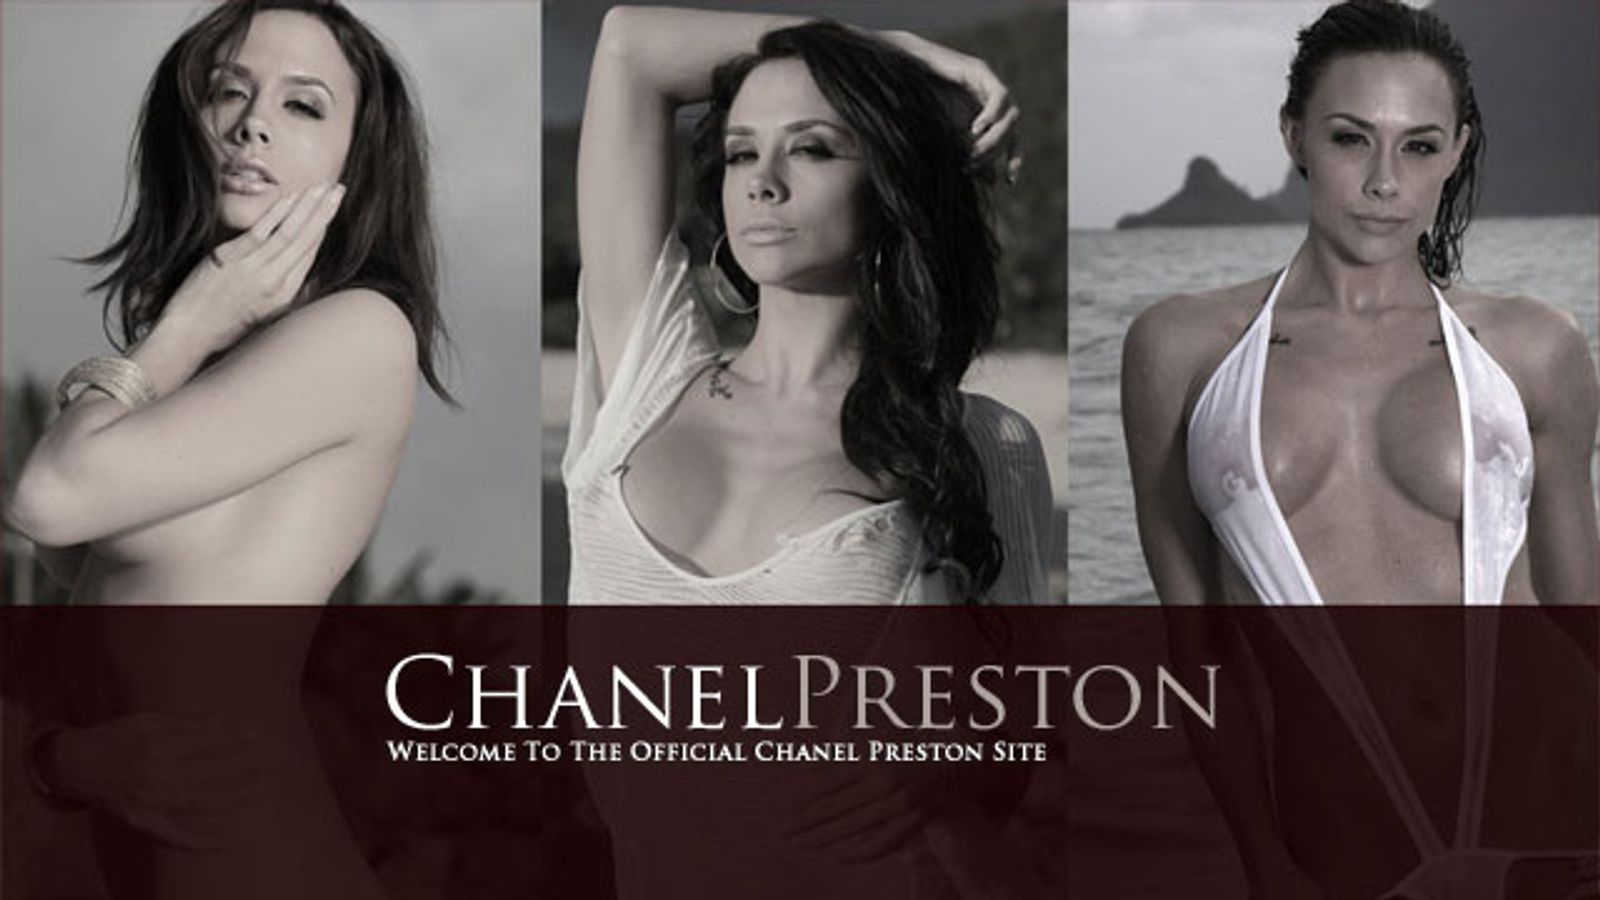 Chanel Preston Launches Official Website, ChanelPreston.com